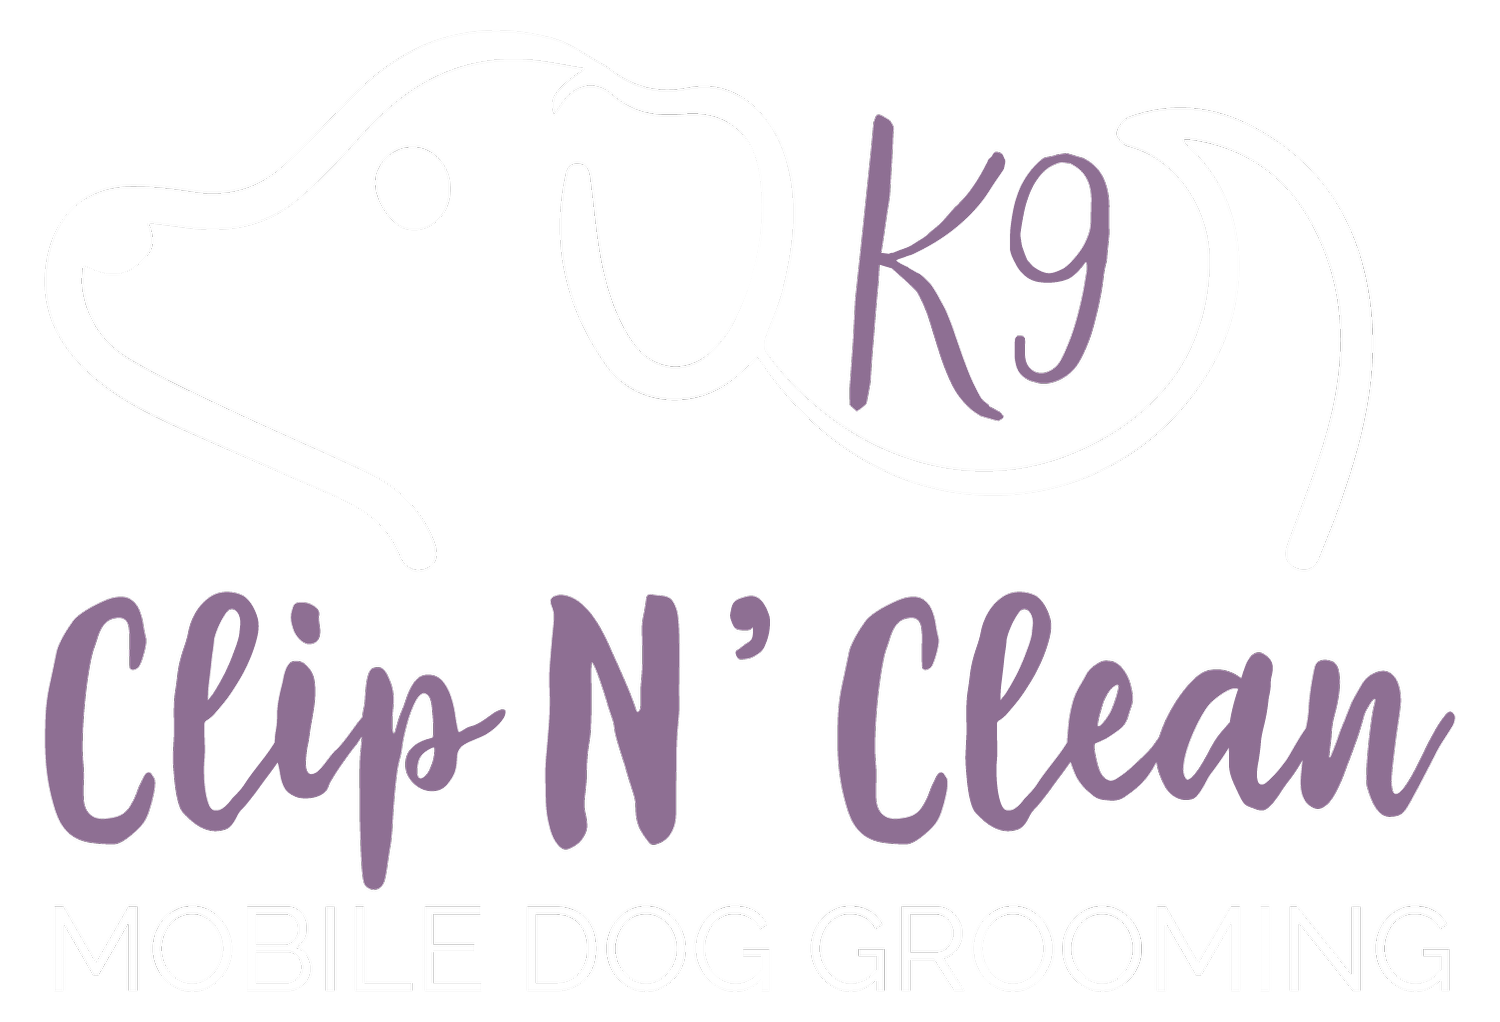 K9 Clip N Clean